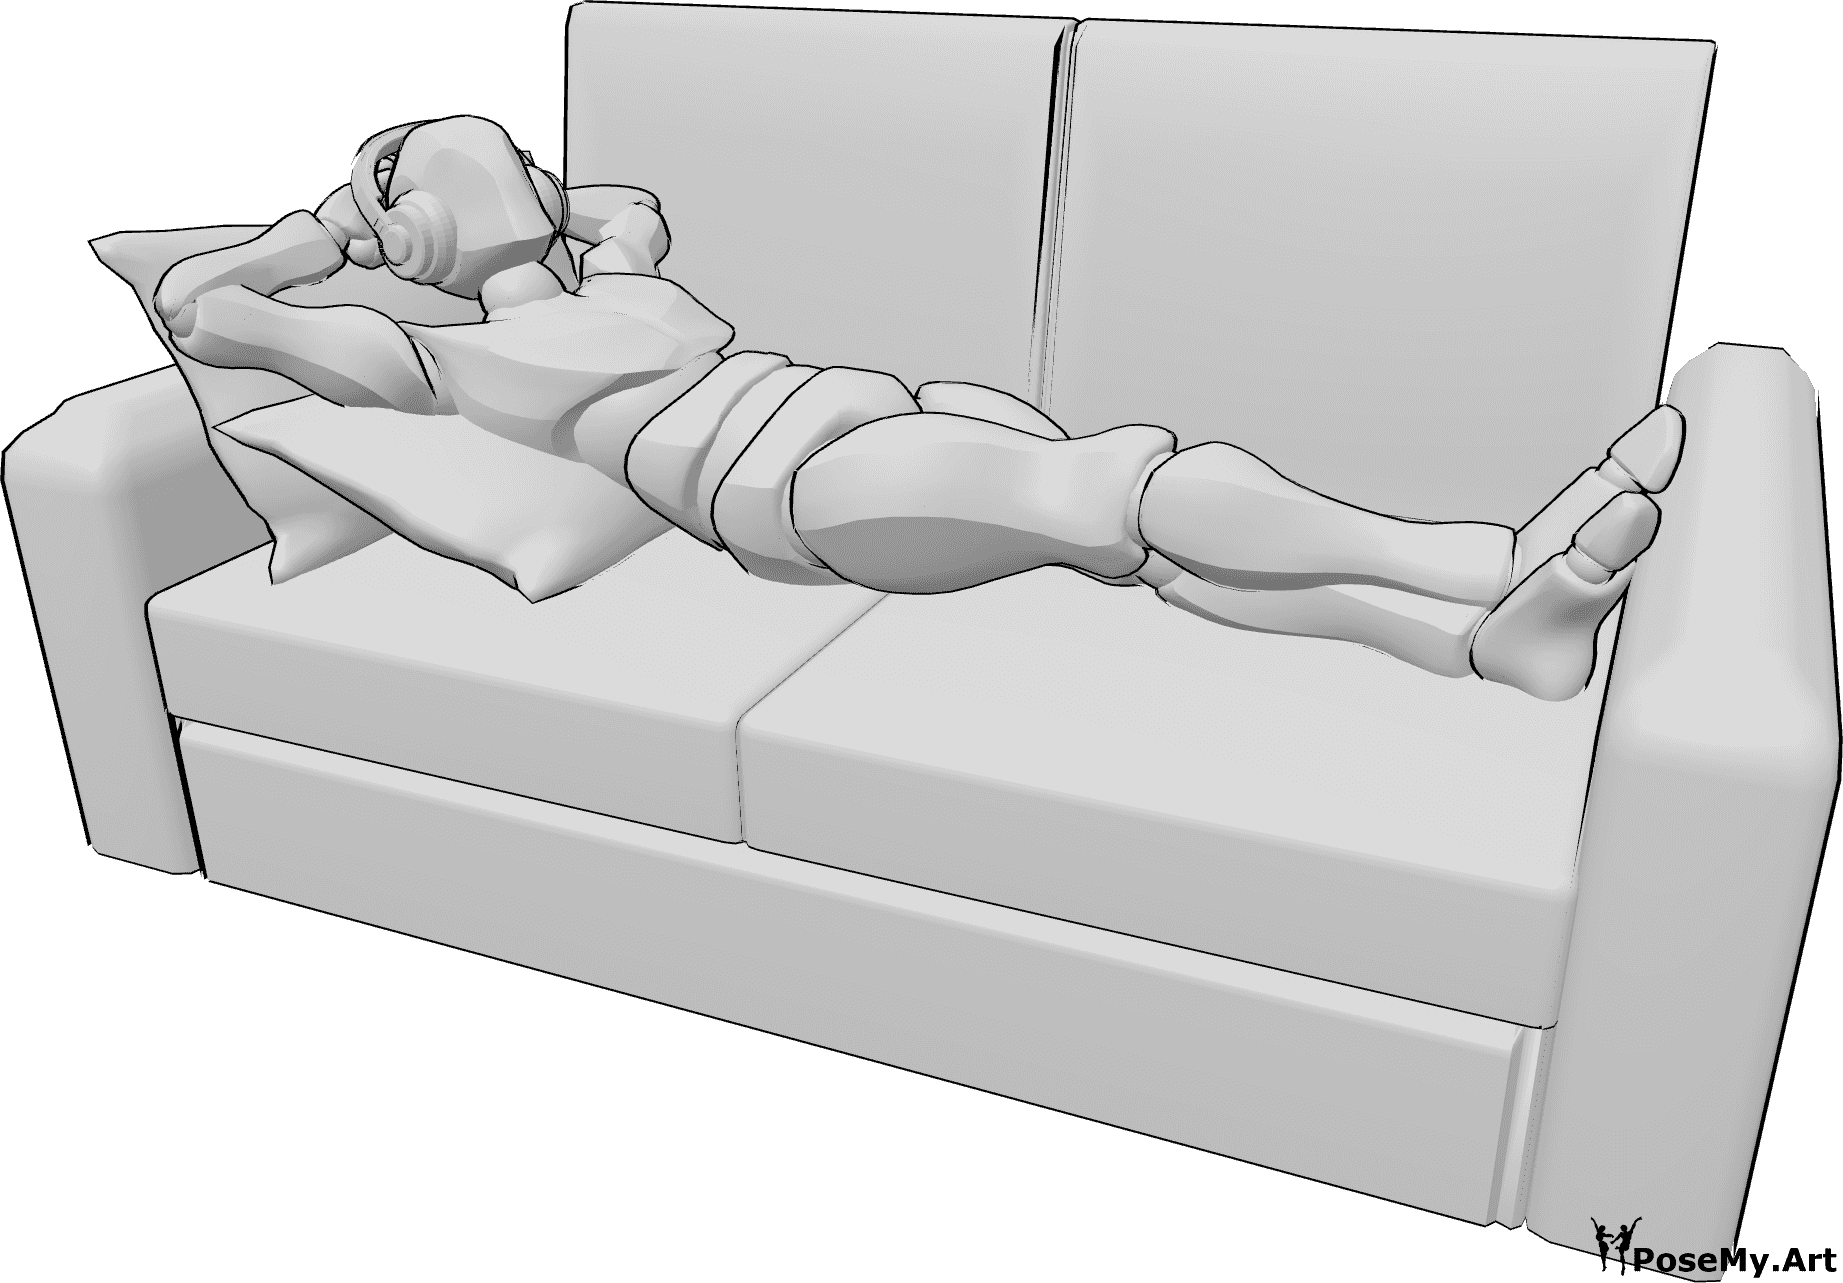 Riferimento alle pose- Uomo in posa con le cuffie - L'uomo è comodamente sdraiato sul divano e ascolta la musica in cuffia.